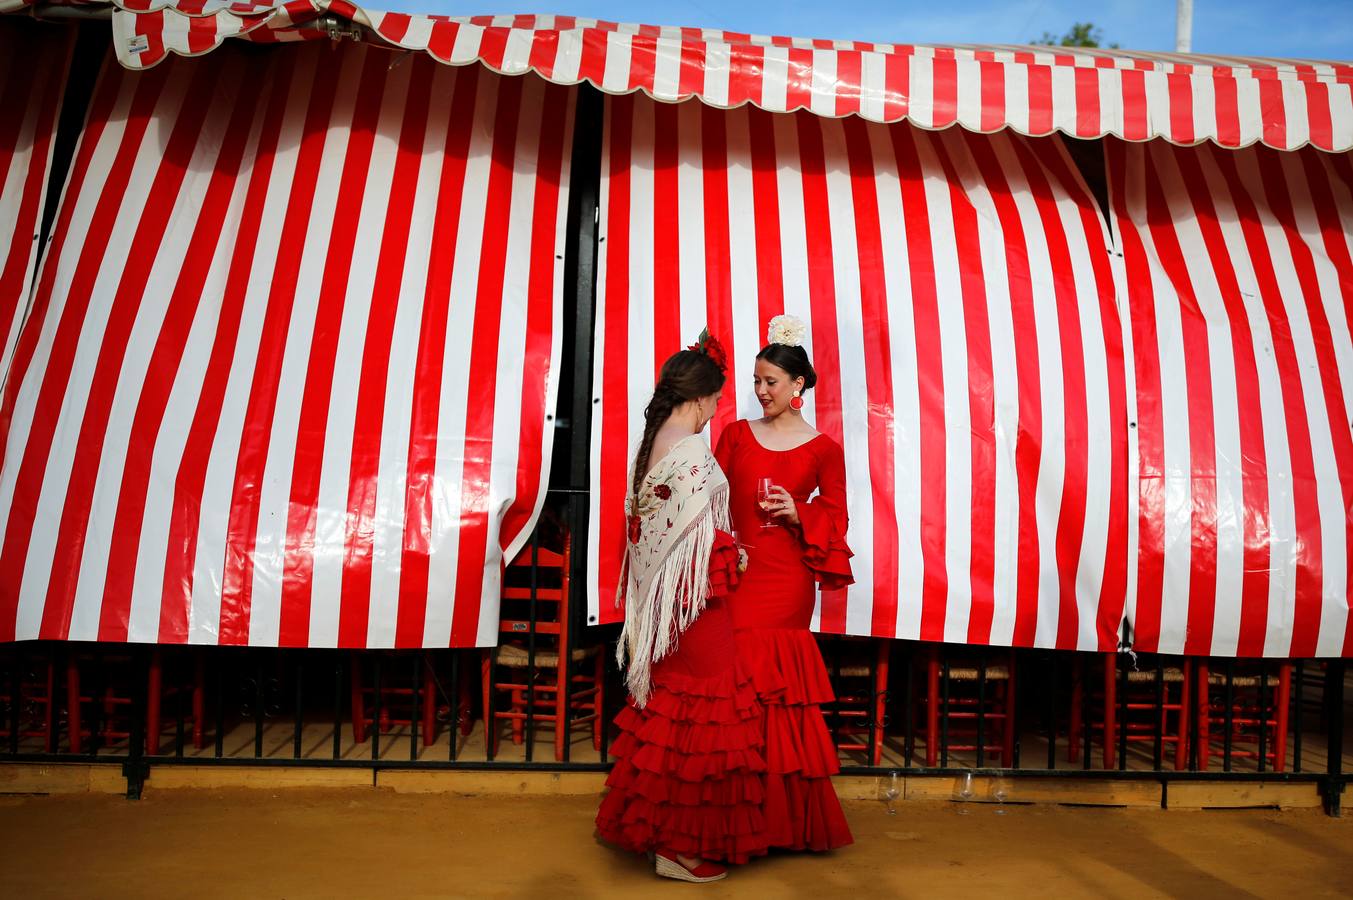 FOTOS: Tendencias para la Feria 2019. ¿Qué trajes de flamenca se llevan este año?